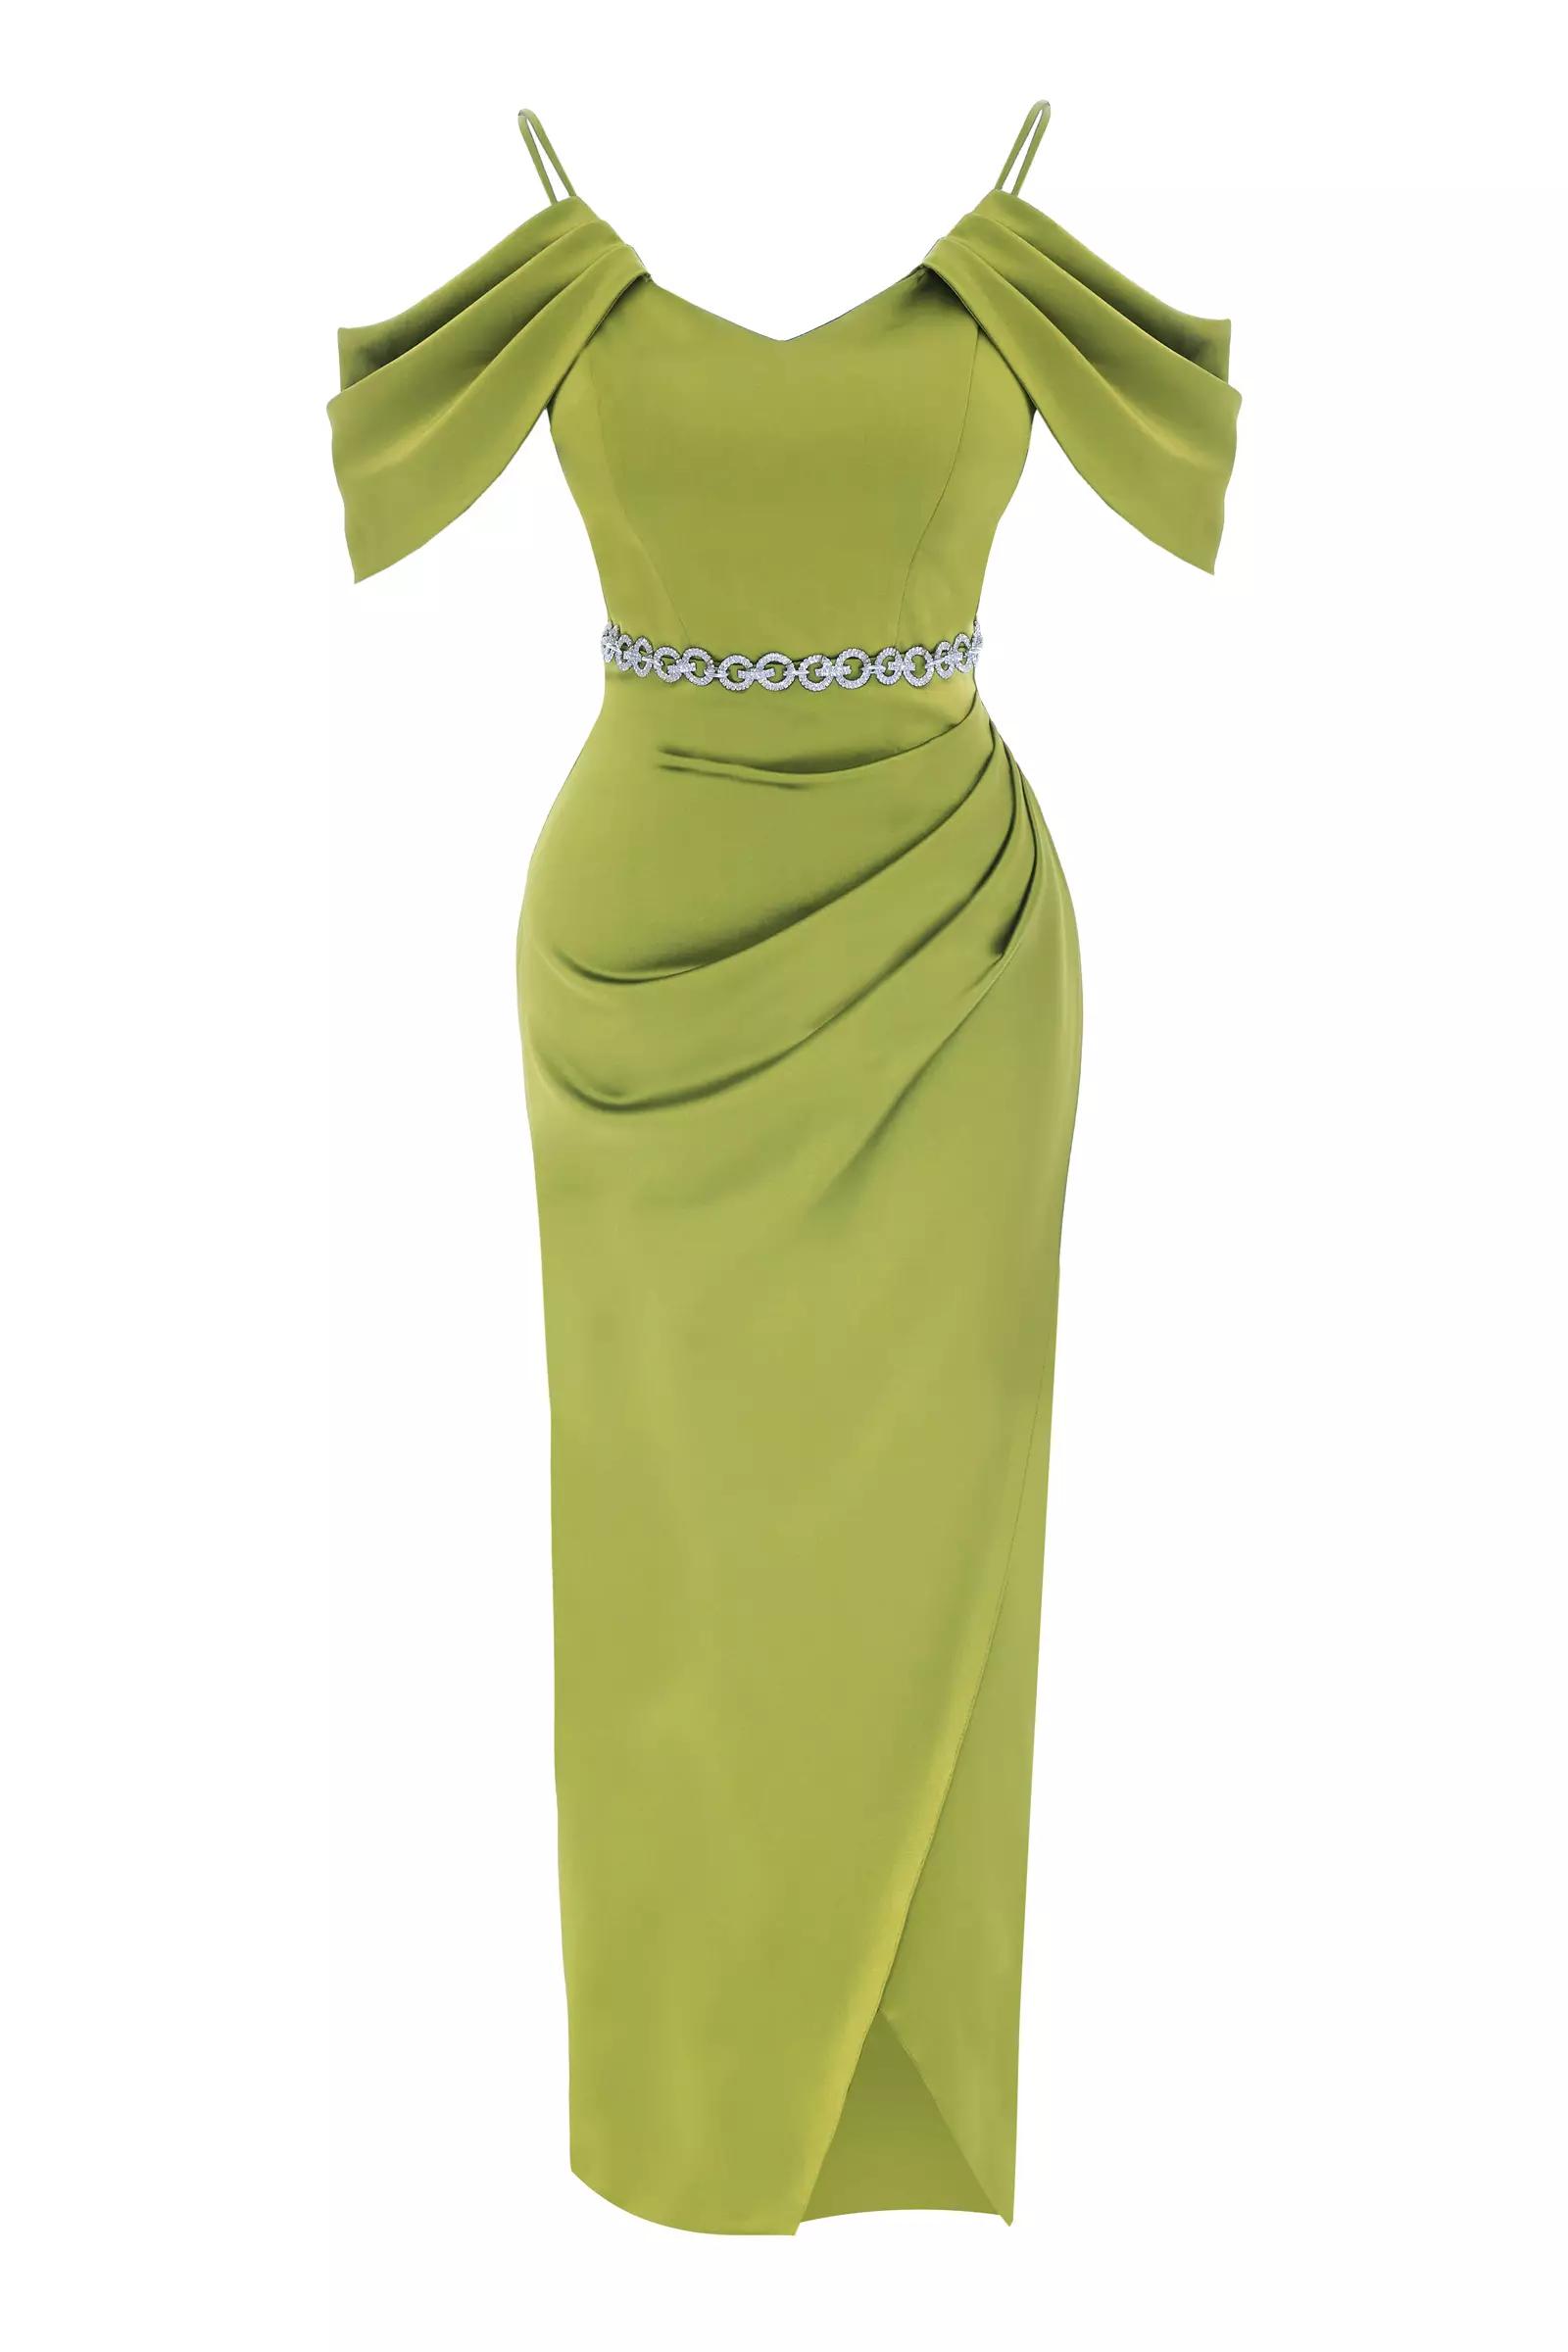 Peanut green satin sleeveless maxi dress